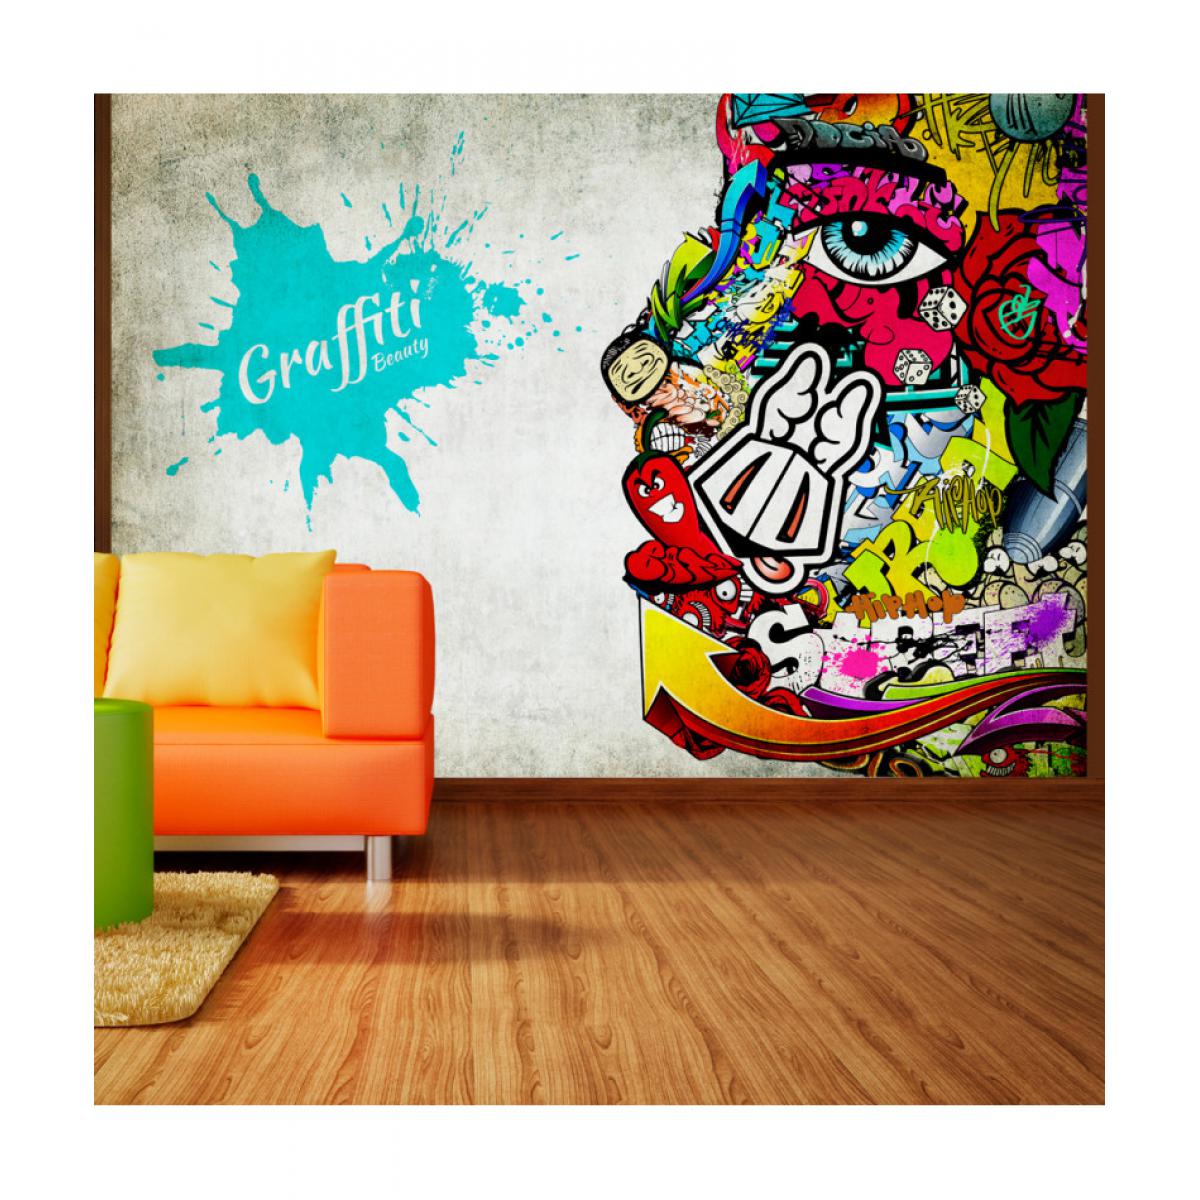 Artgeist - Papier peint - Graffiti beauty 300x210 - Papier peint